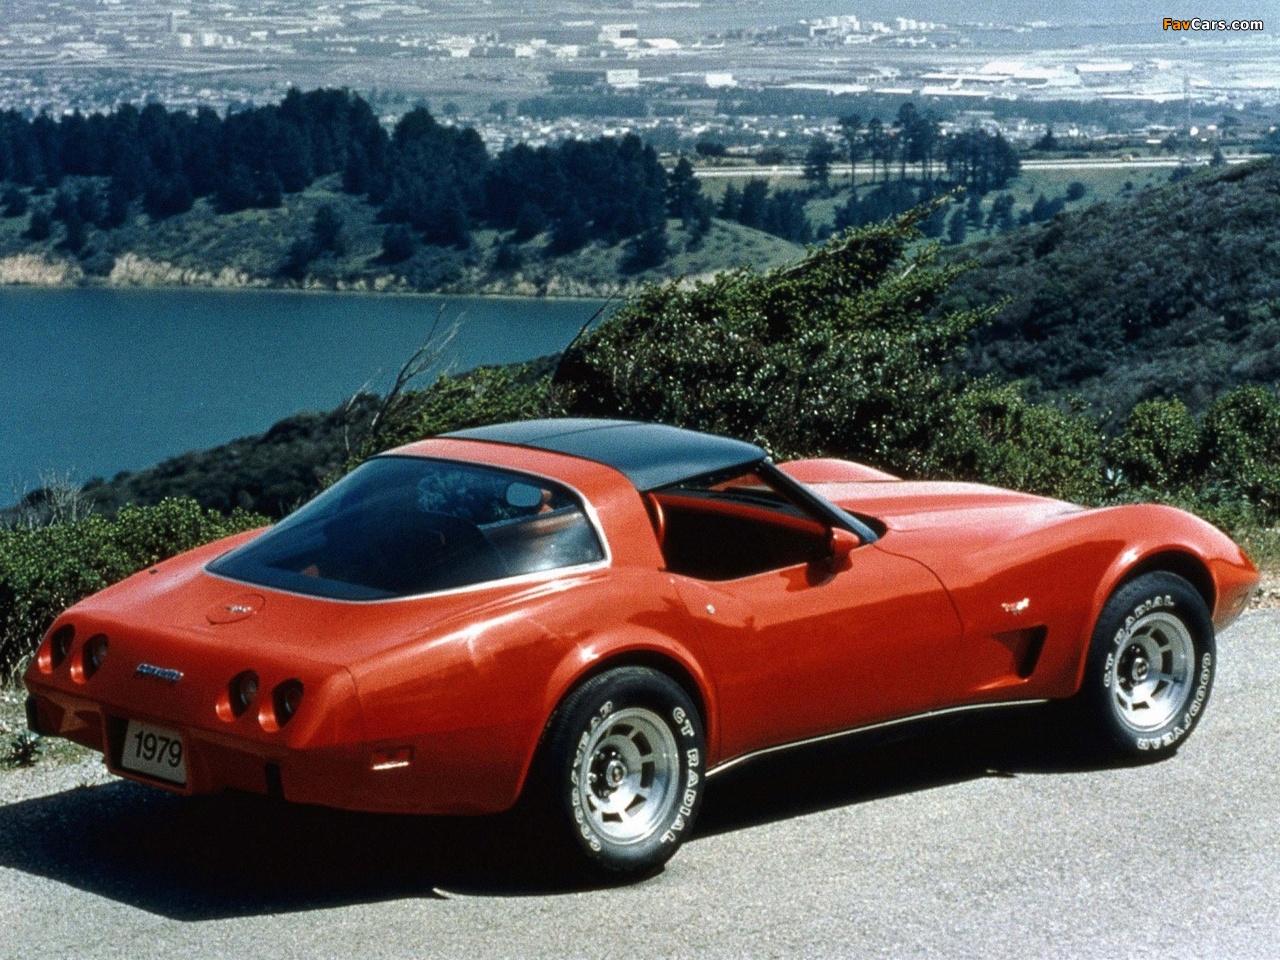 1979 Corvette Wallpapers